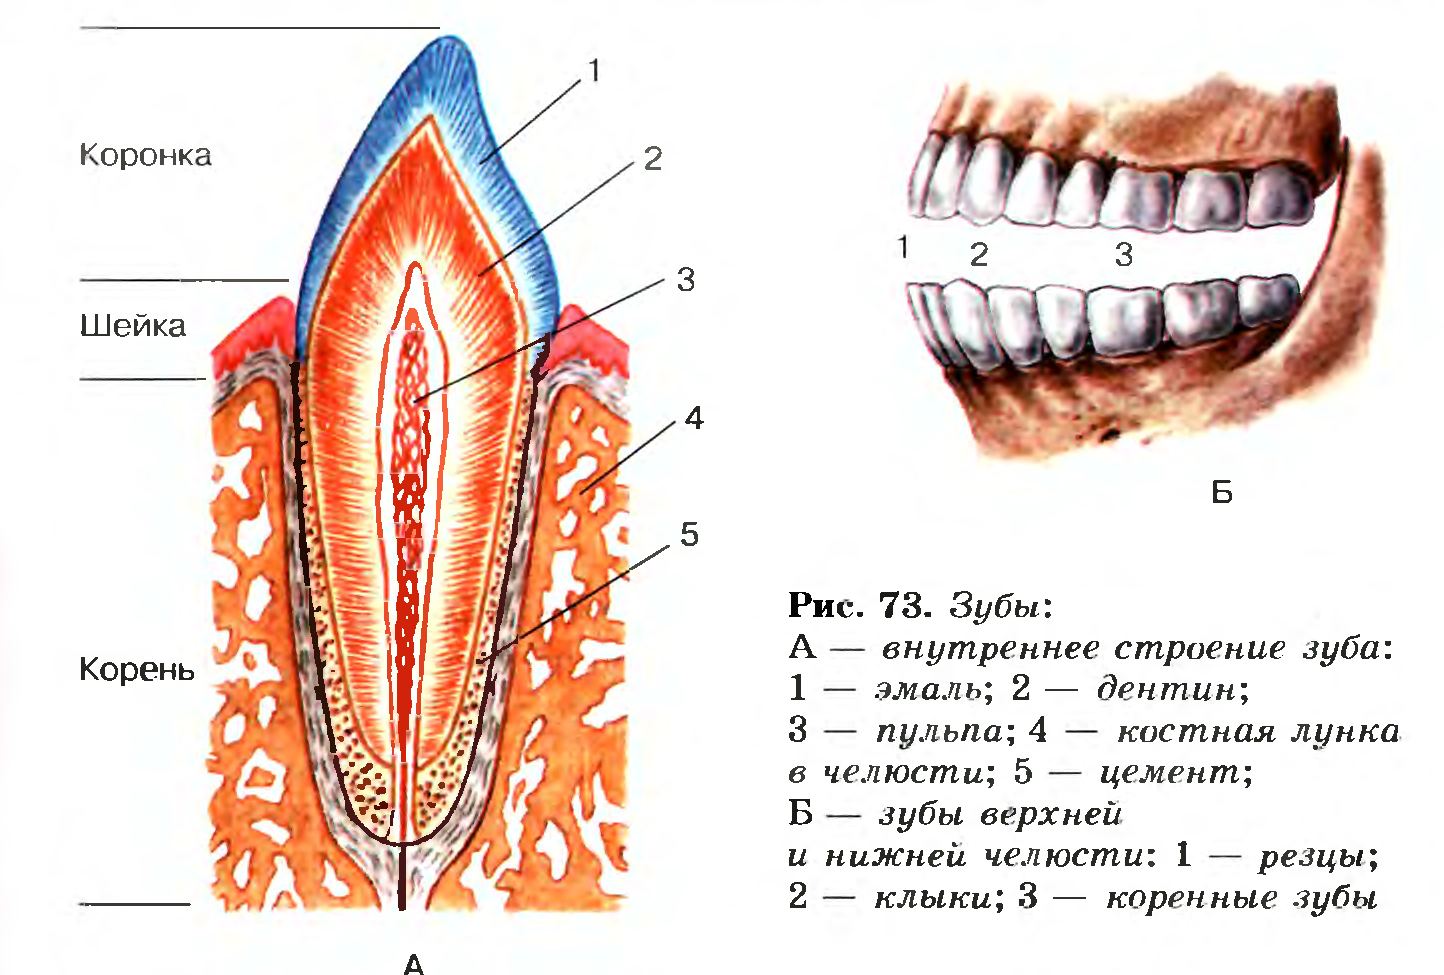 Зубной на латыни. Зубы: резцы, клыки, коренные зубы.. Строение зуба биология 8 класс биология. Строение зуба человека челюсть анатомия. Схема анатомического строения зуба.